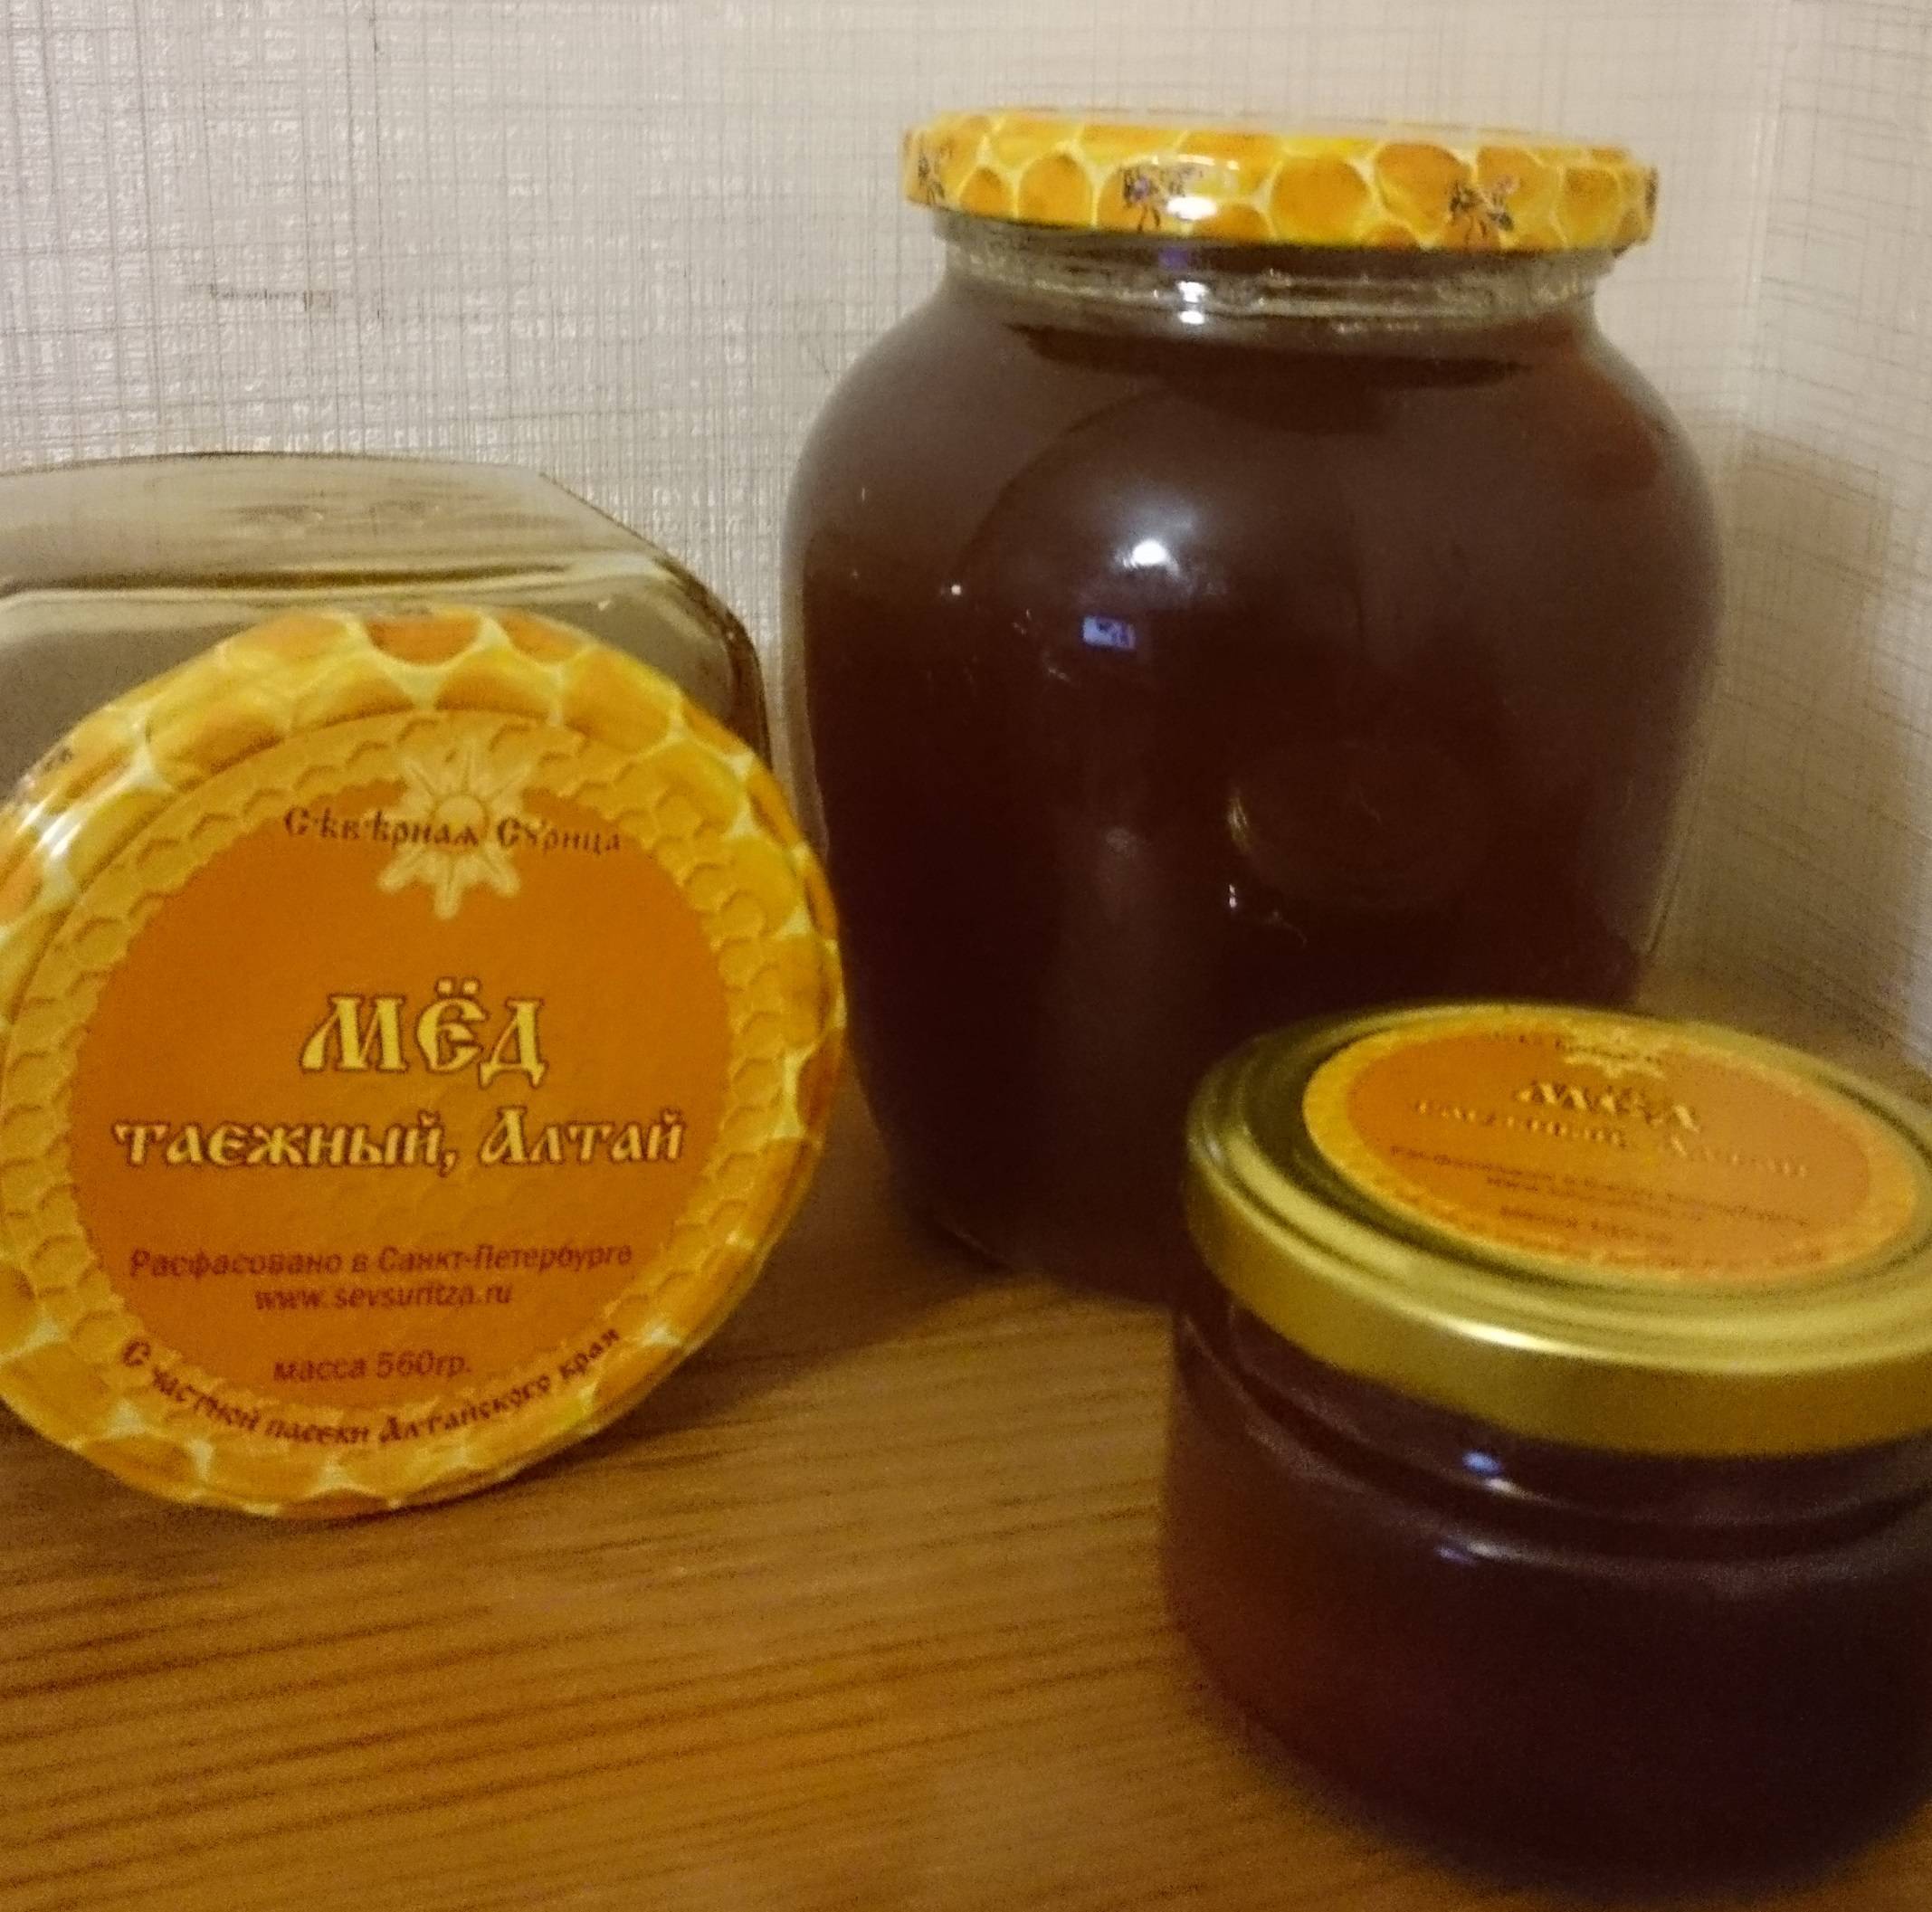 Полезные свойства горного алтайского мёда, его виды, характеристика и противопоказания